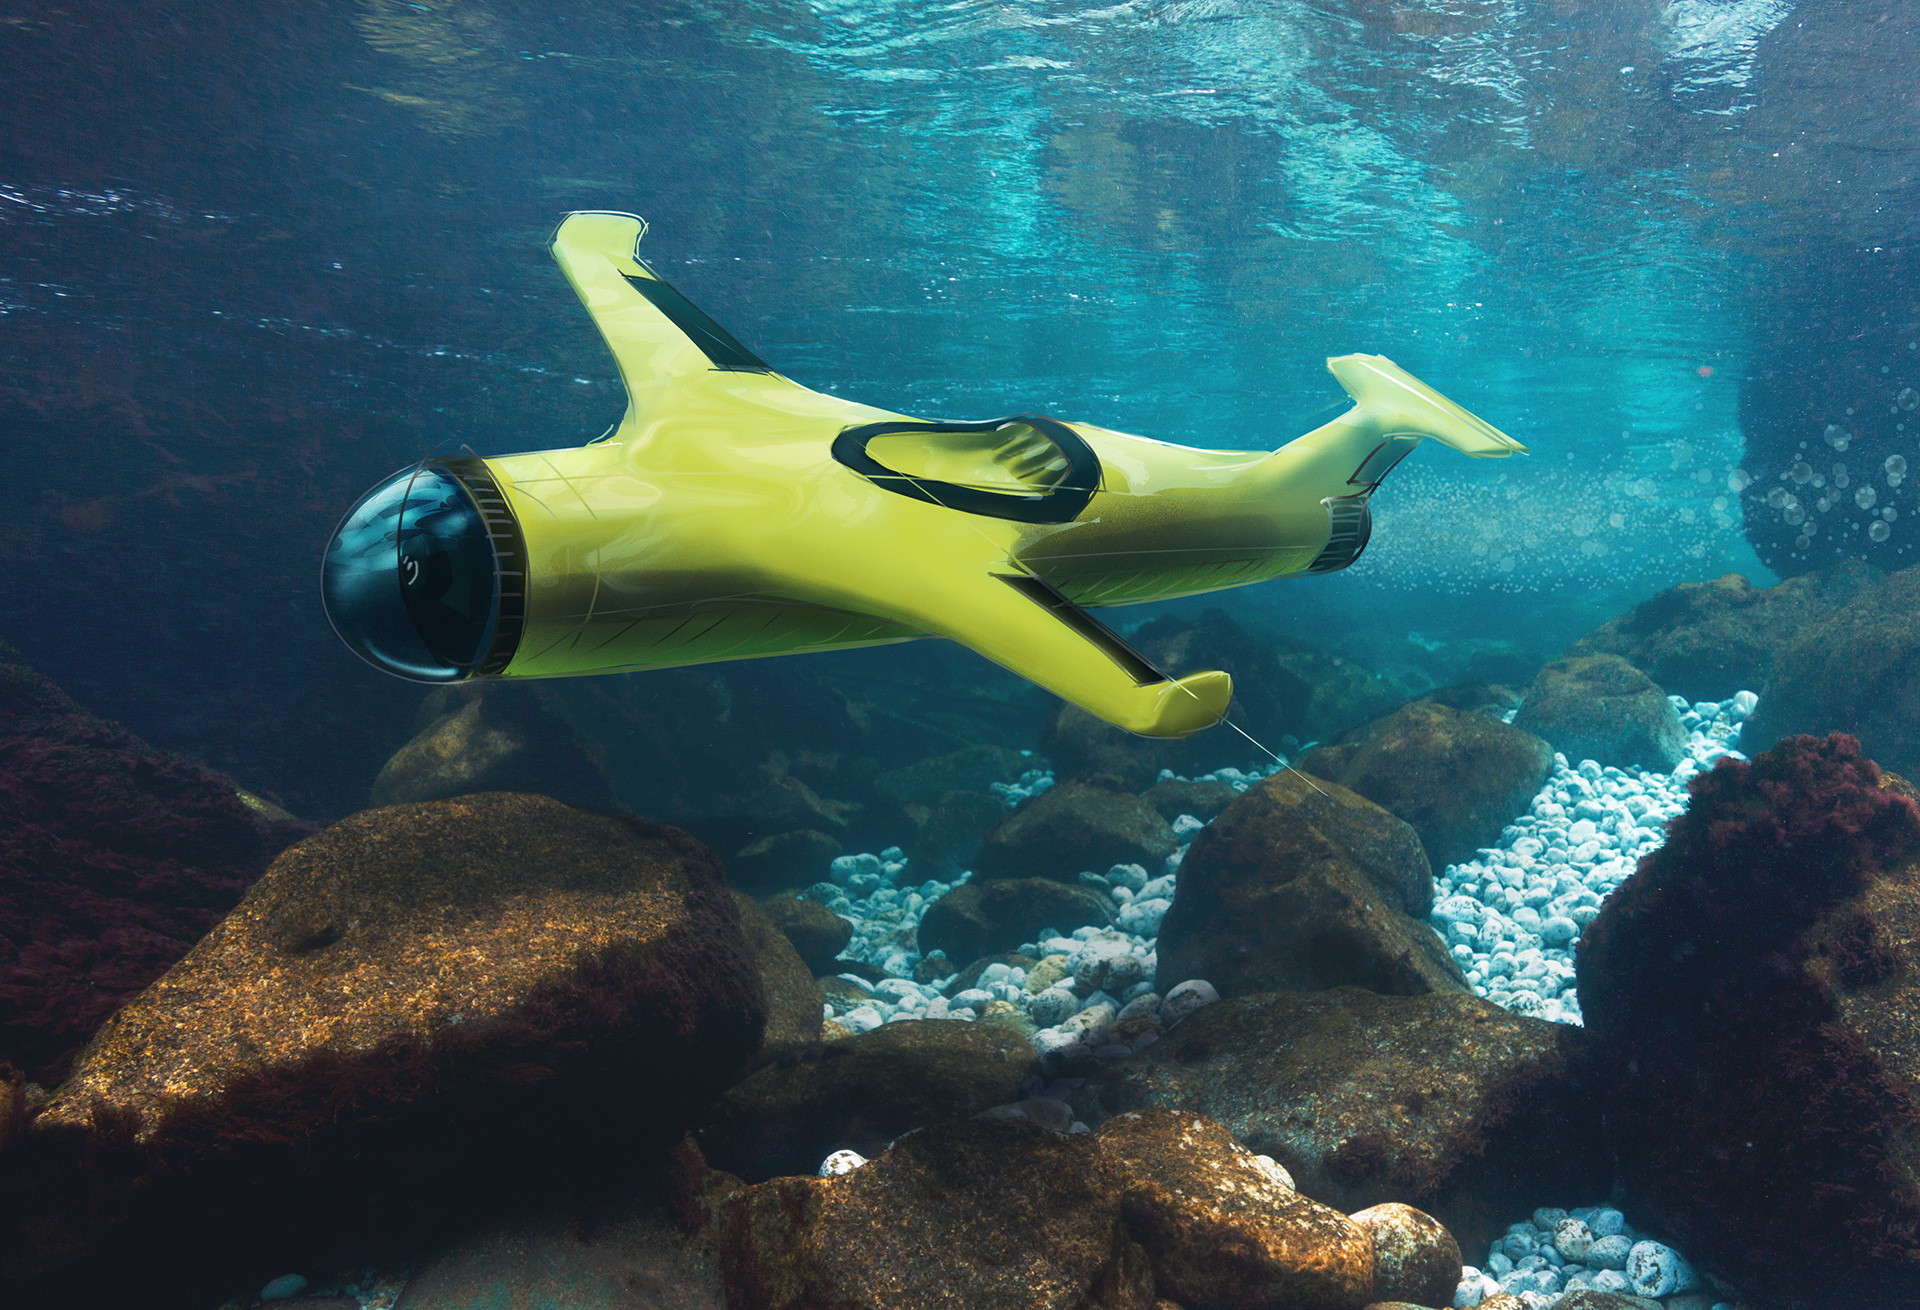 Underwater drone on Behance